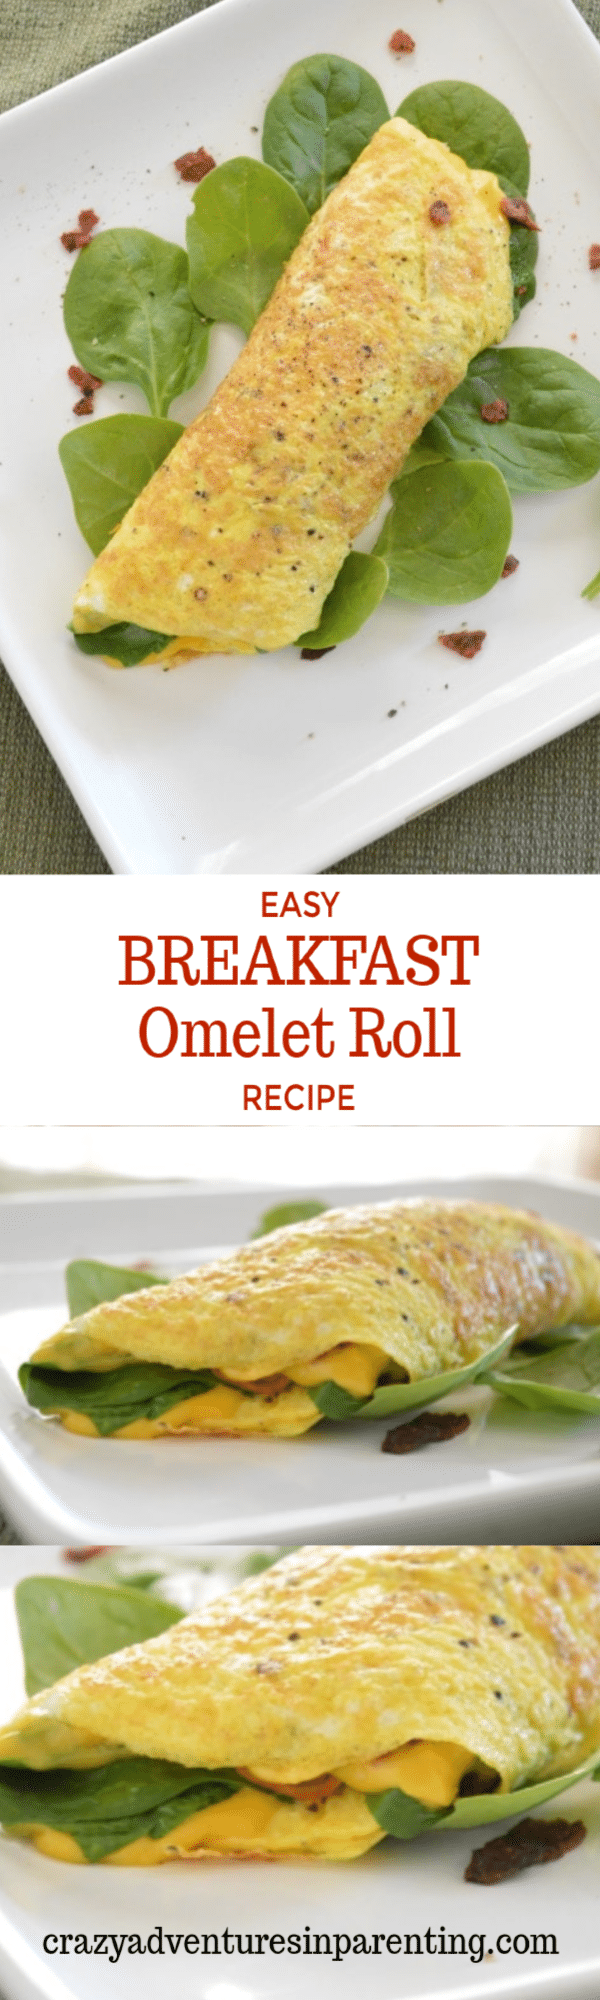 Easy Breakfast Omelet Roll Recipe